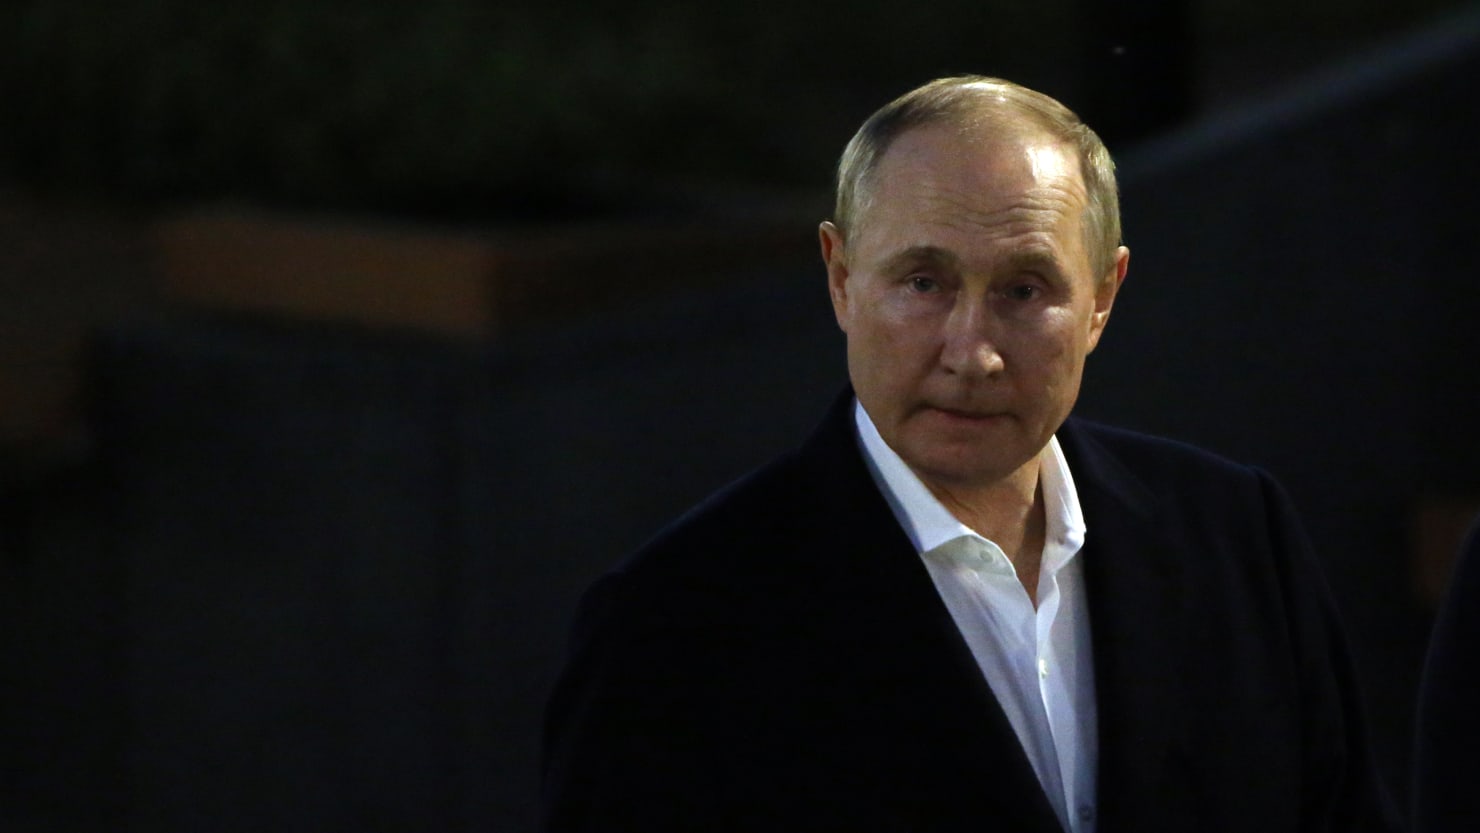 Los juegos mentales retorcidos de Putin acaban de alcanzar un nuevo mínimo inquietante